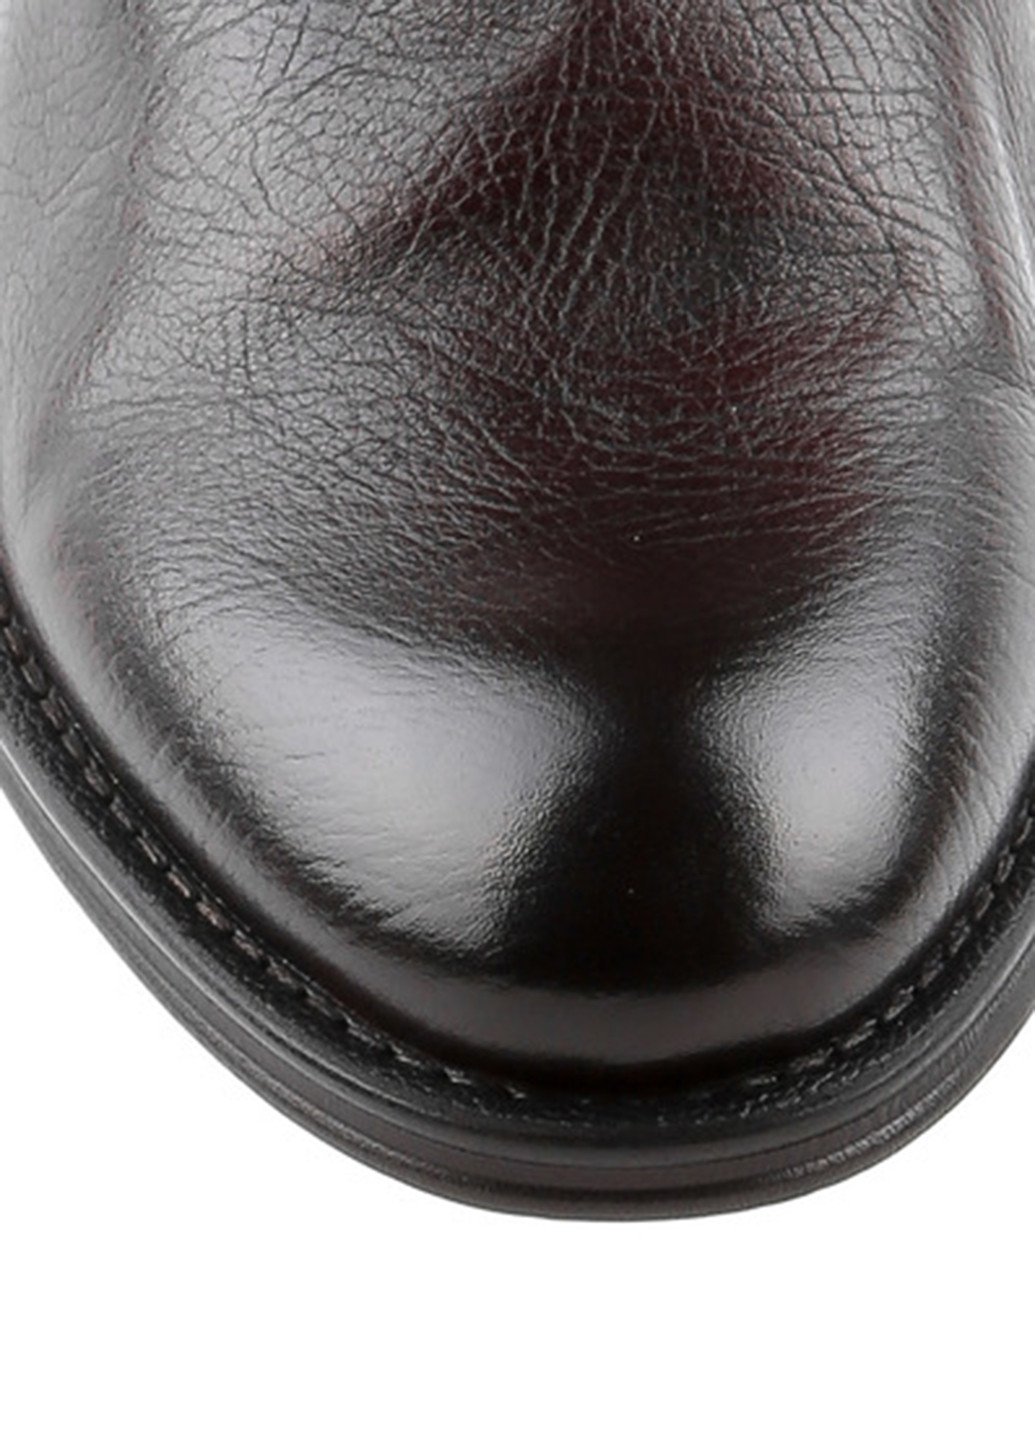 Темно-коричневые кэжуал туфли Le'BERDES на шнурках